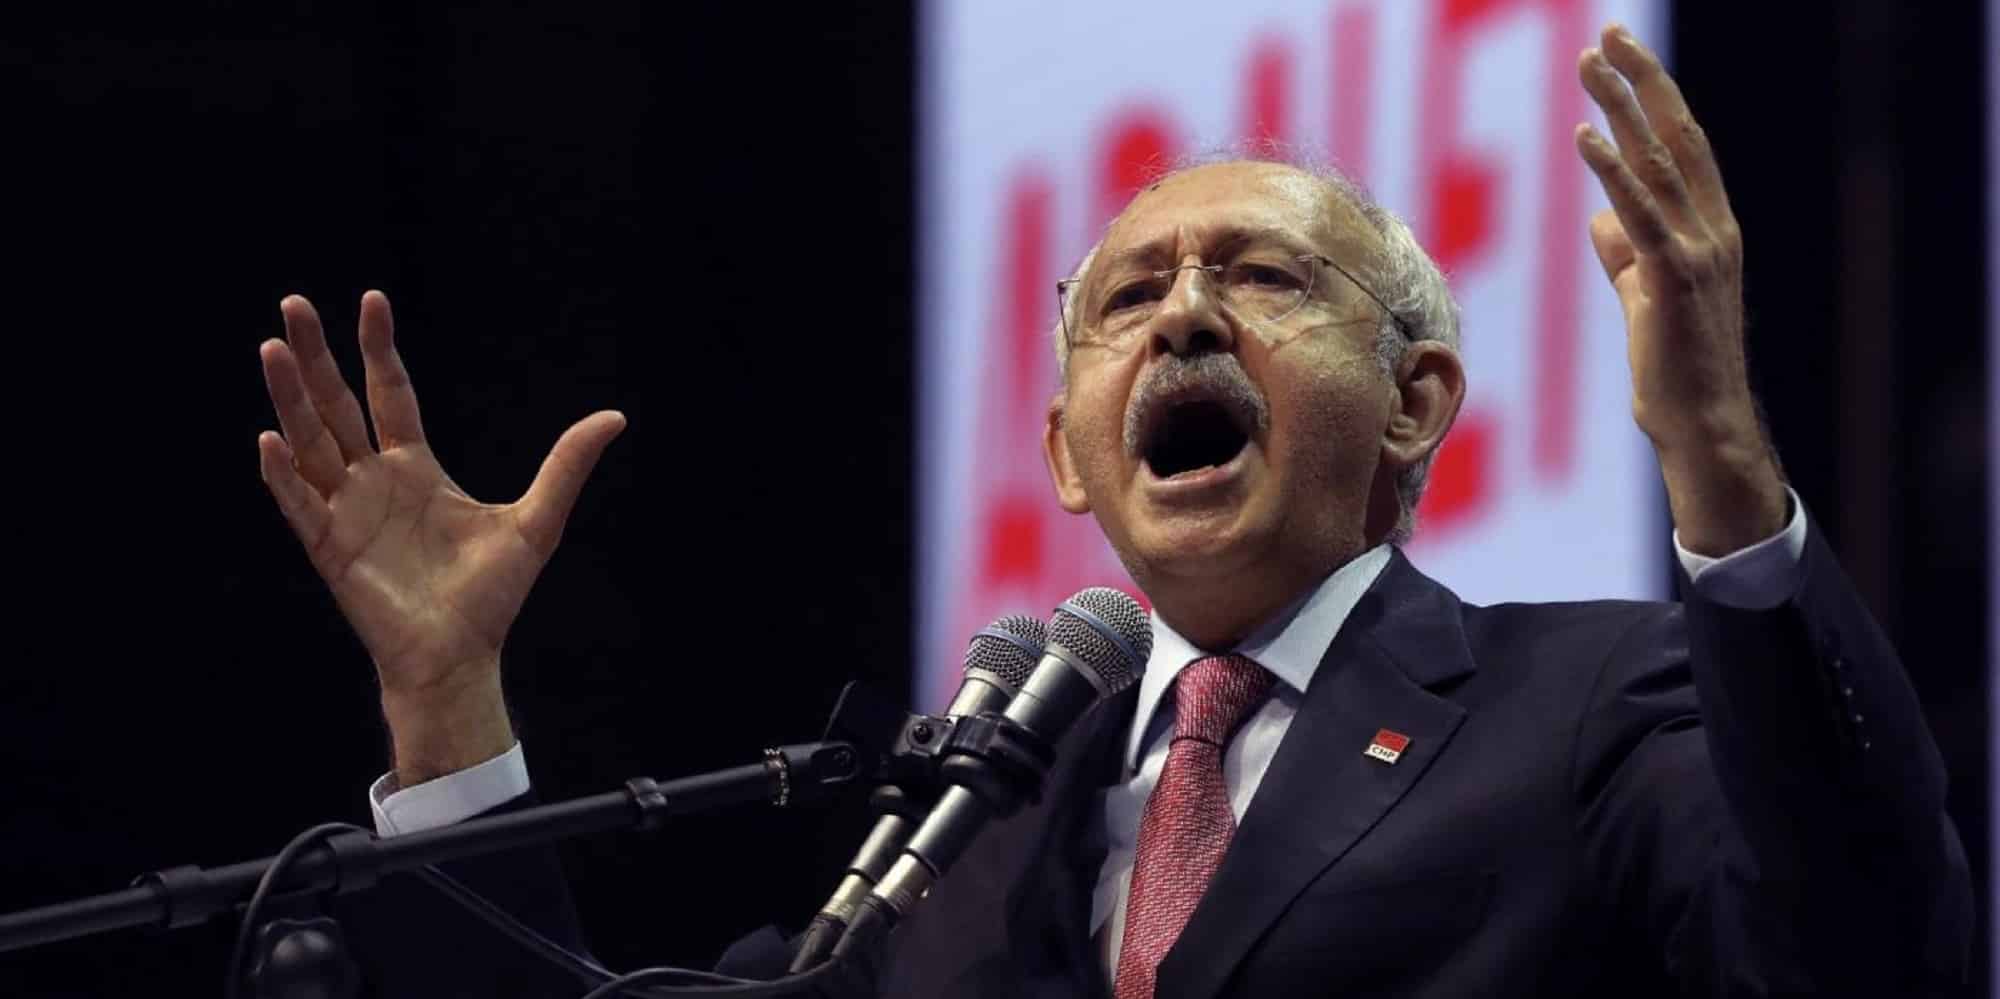 Οι δημοσκοπήσεις δείχνουν ότι το μπλοκ της αντιπολίτευσης, η Εθνική Συμμαχία, προηγείται στις βουλευτικές εκλογές κατά περισσότερες των 6 ποσοστιαίες μονάδες του κυβερνώντος Κόμματος Δικαιοσύνης και Ανάπτυξης (AKP) και των συμμάχων του